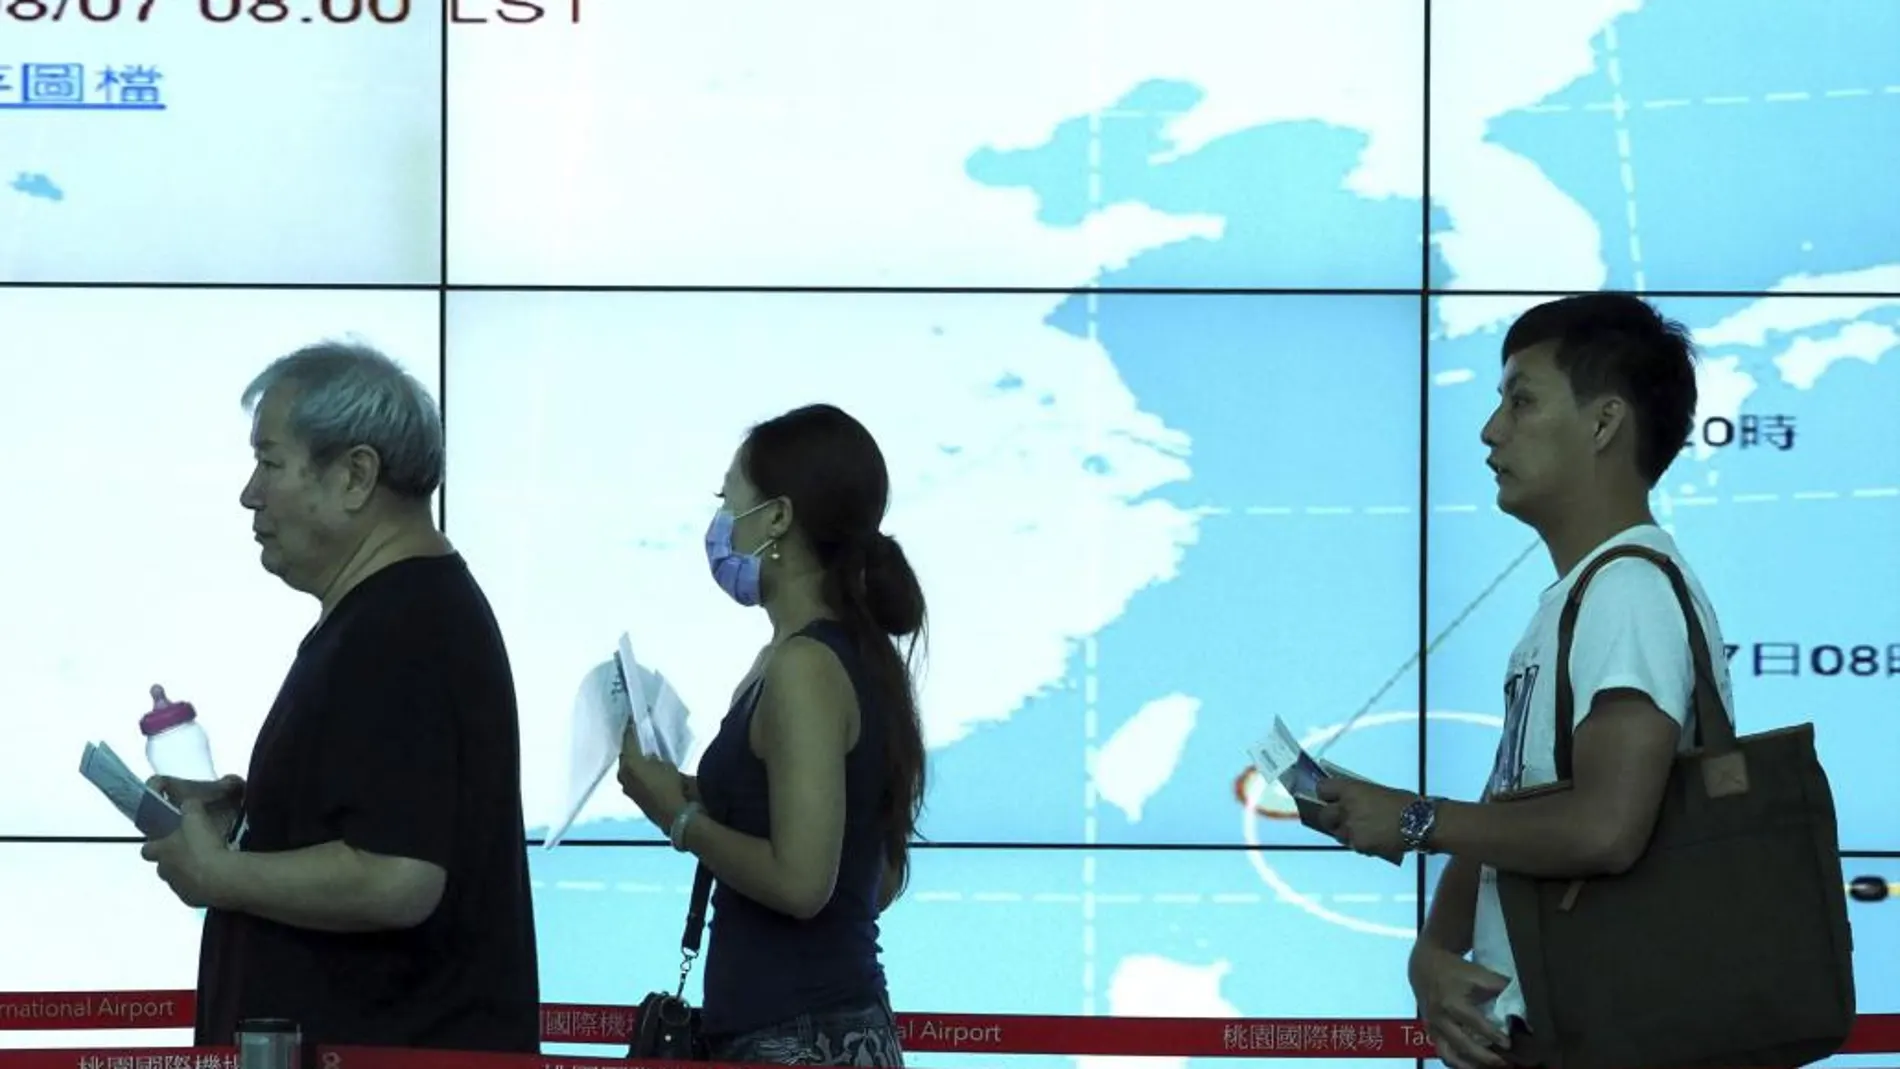 Pasajeros caminan junto a una pantalla que muestra la evolución del tifón Soudelor antes de embarcar en su vuelo en el aeropuerto Internacional de Taoyuan, taiwán.